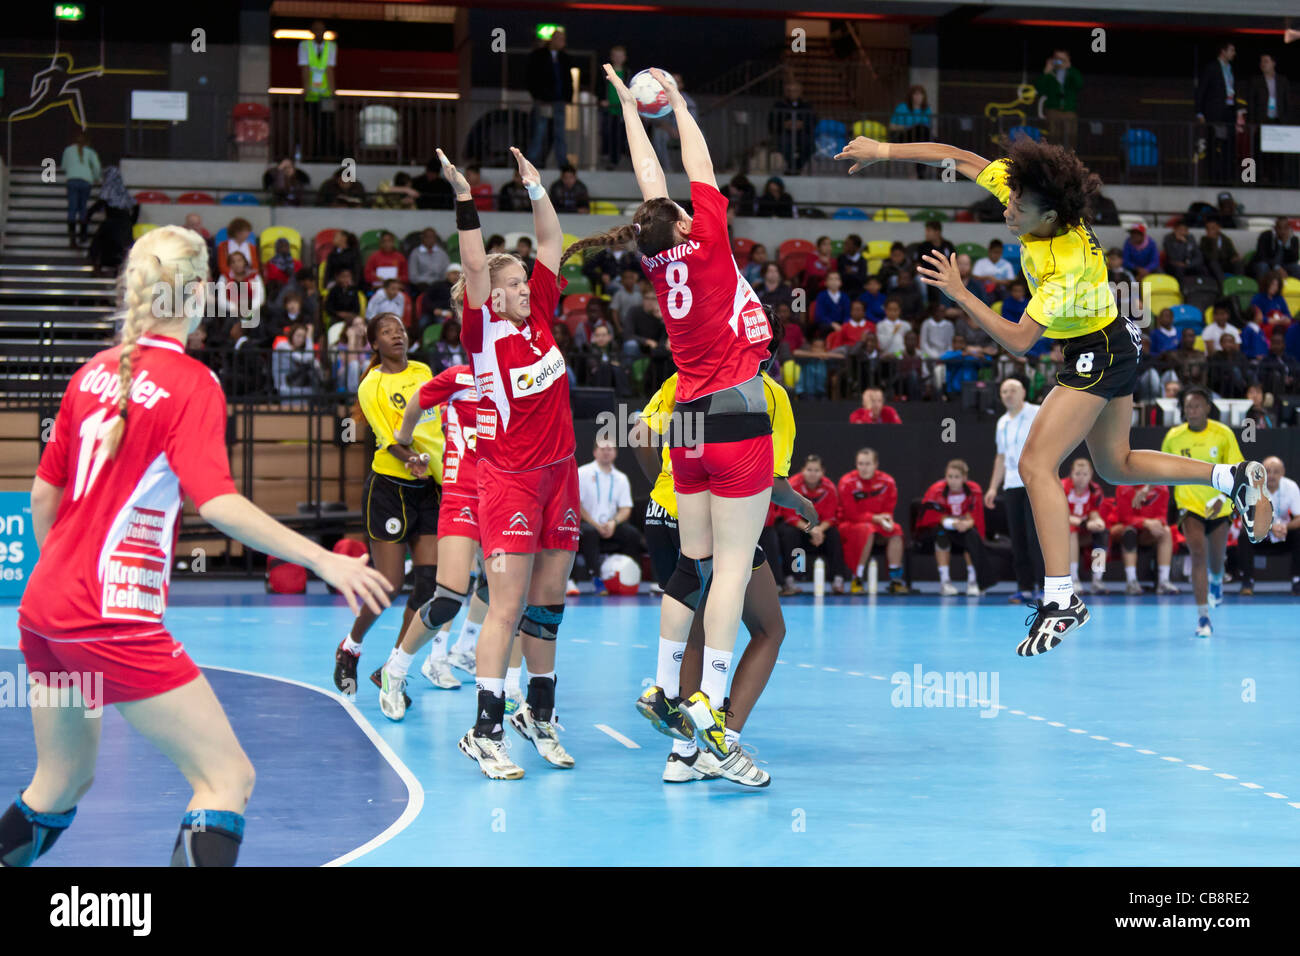 Angola v Austria presso la donna Londra Handball Cup. Tenuto presso la pallamano Arena, UK. Foto Stock